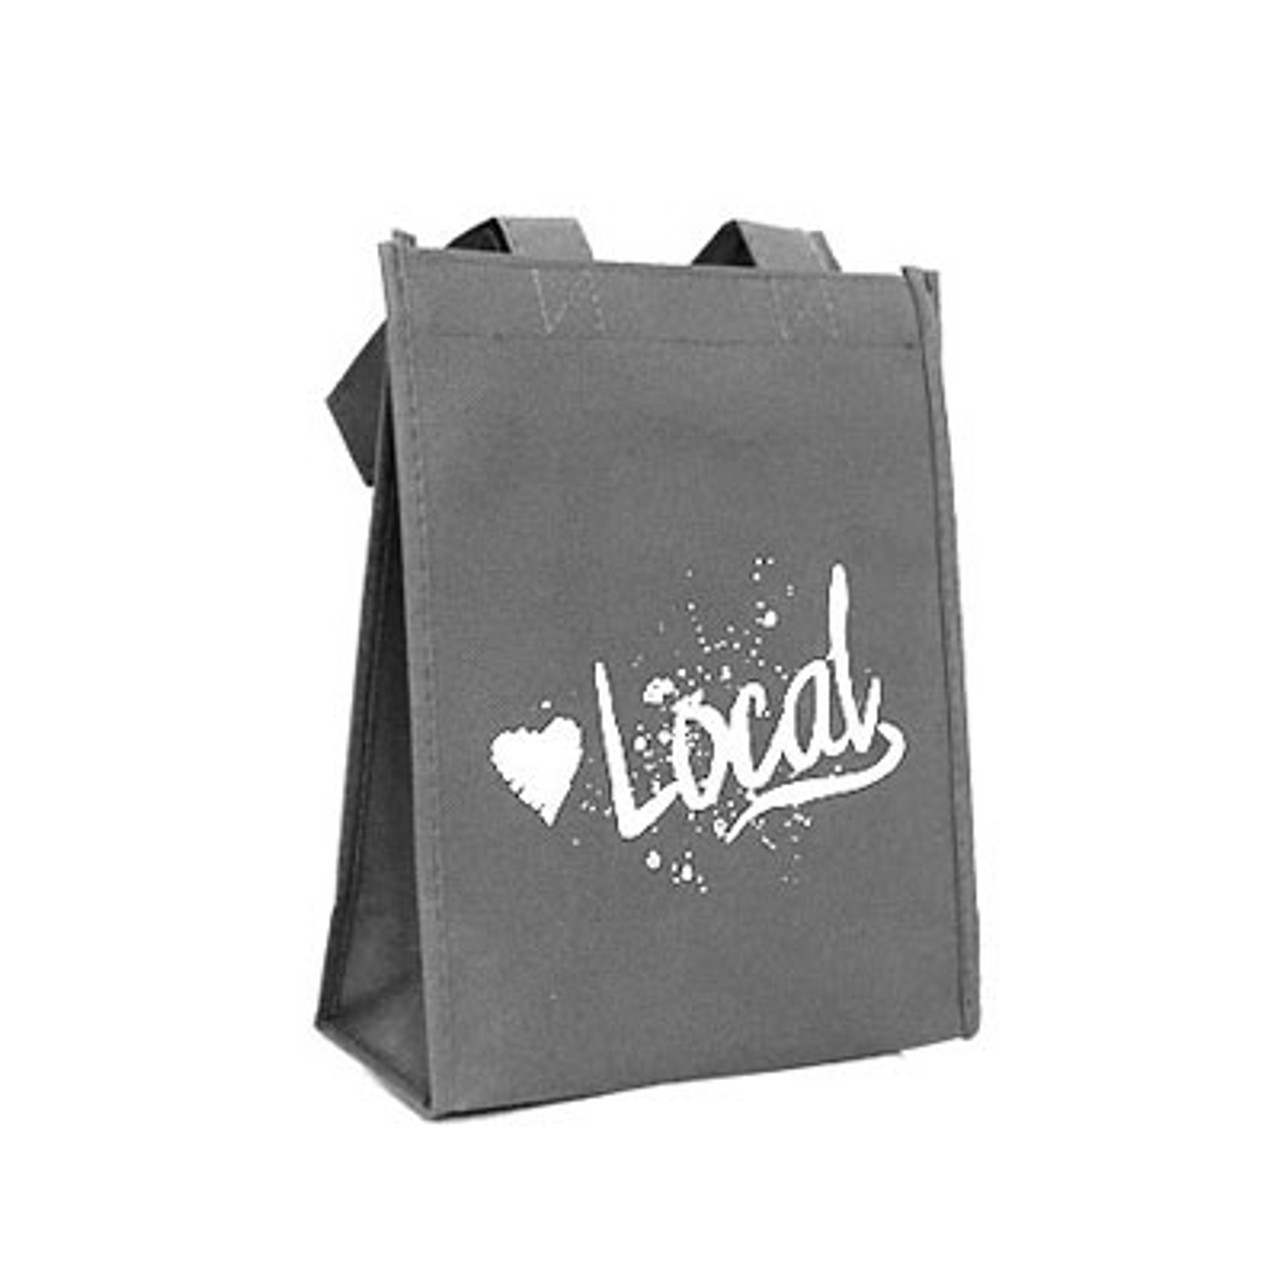 Love Local Petite - 8"x4"x10" Grey Non-Woven Cloth Shopping Bags